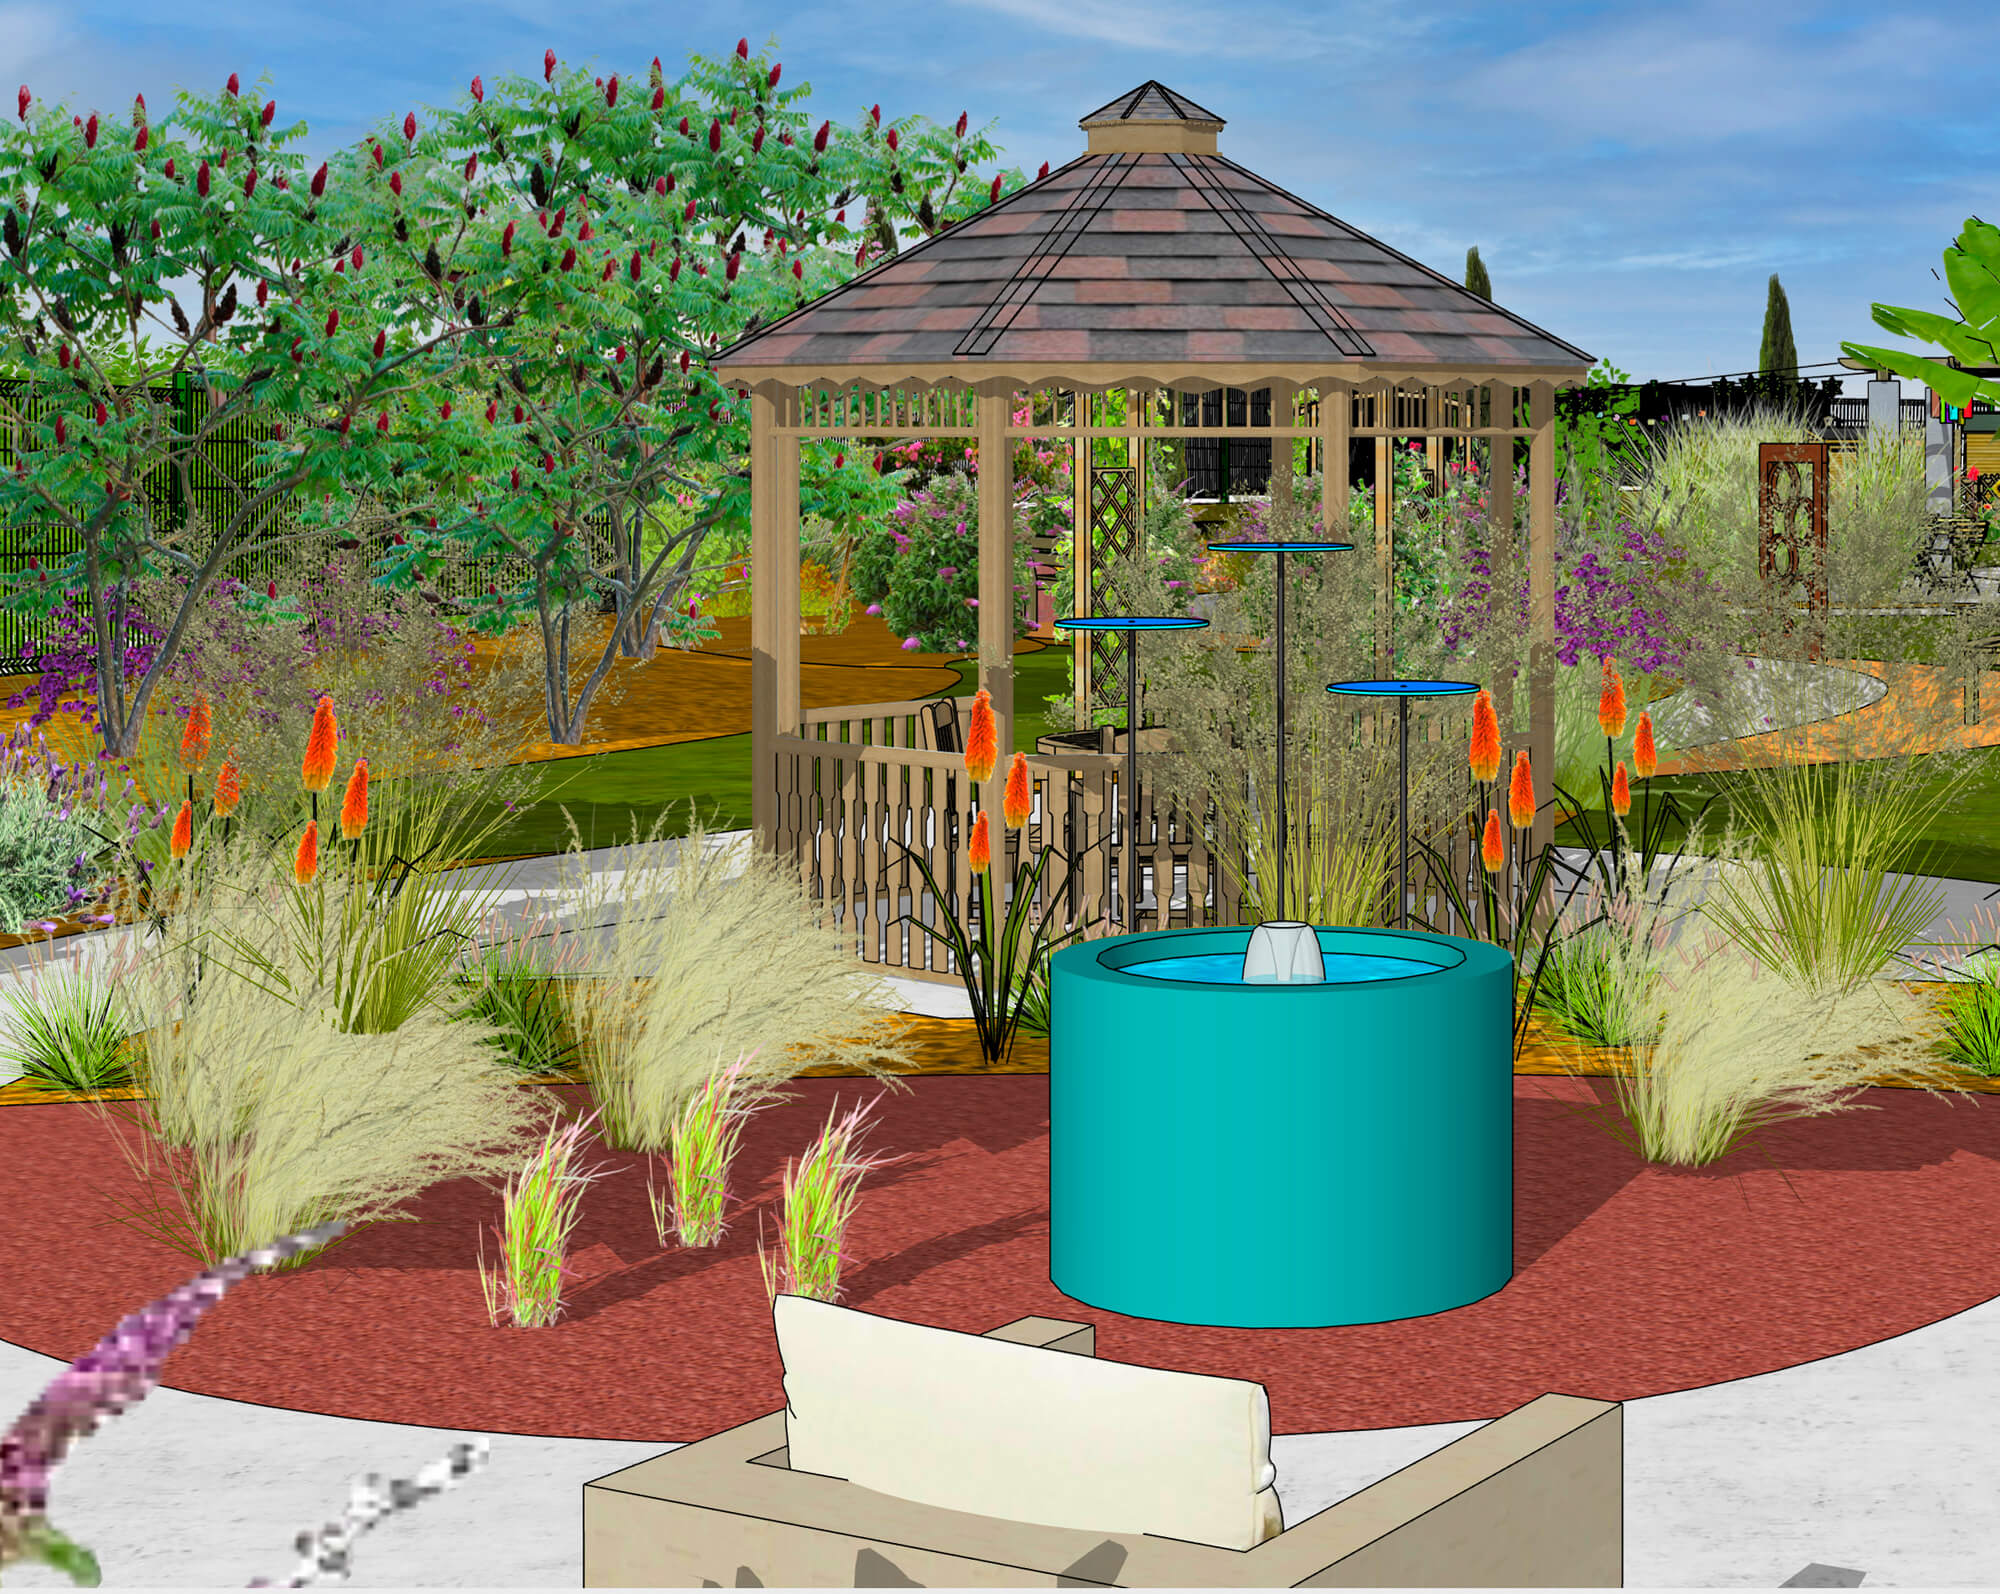 conception 3D du futur jardin thérapeutique Les Bayles